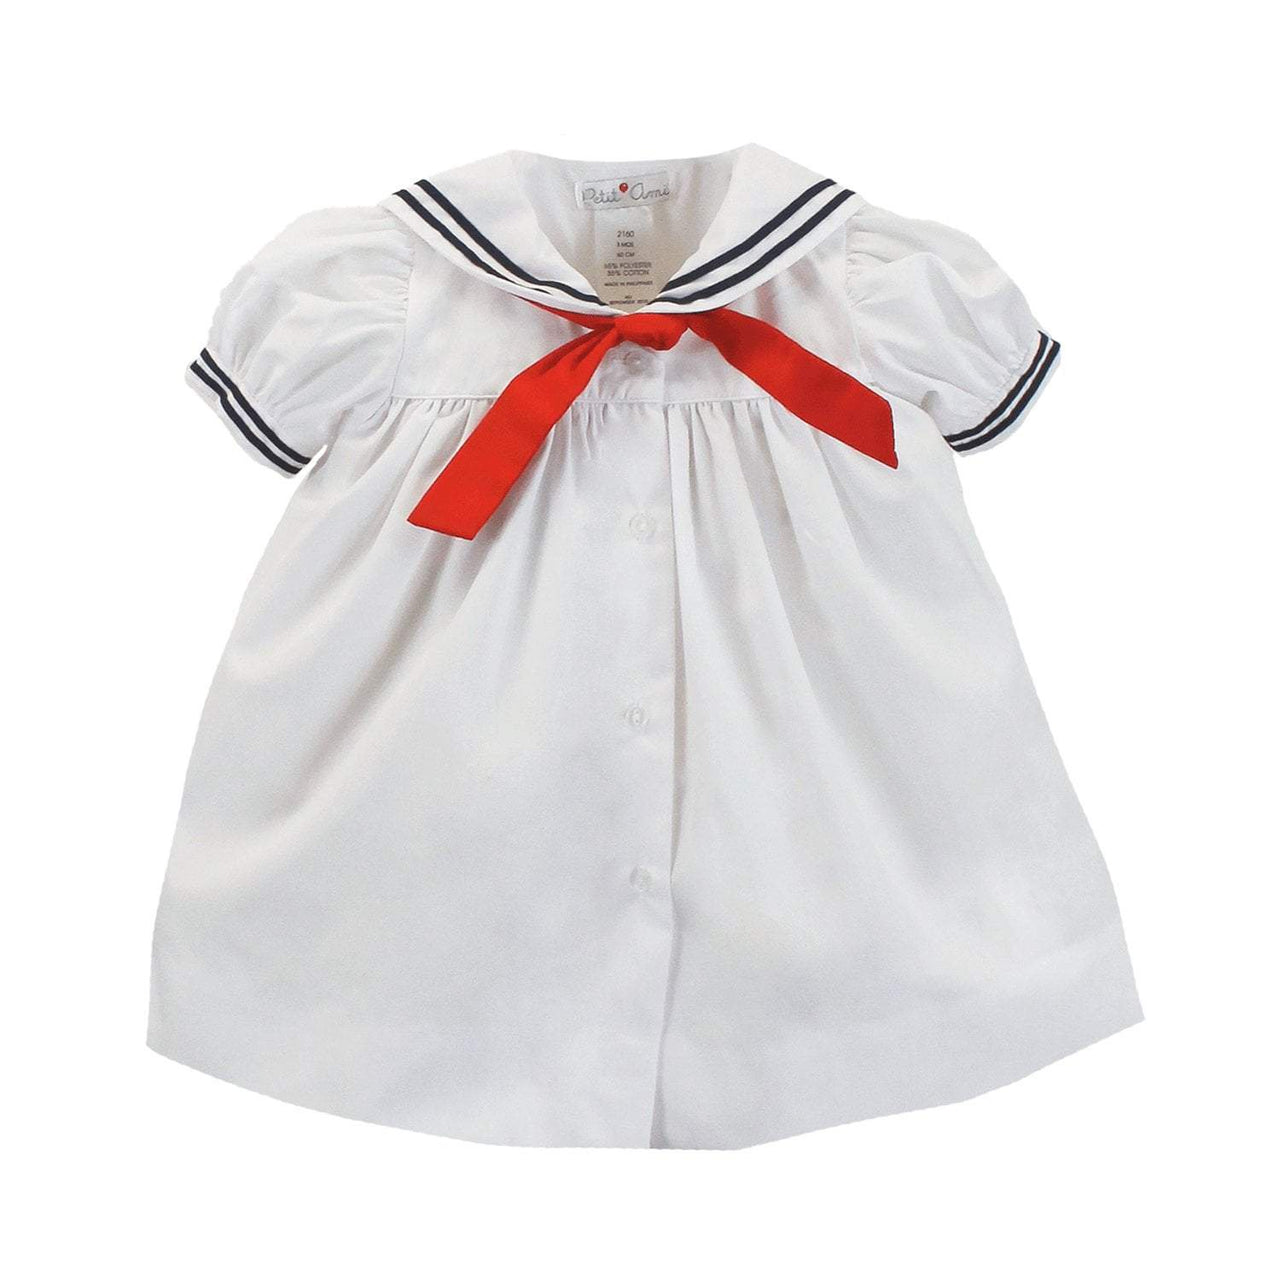 Petit Ami Sailor Dress 2160/3060